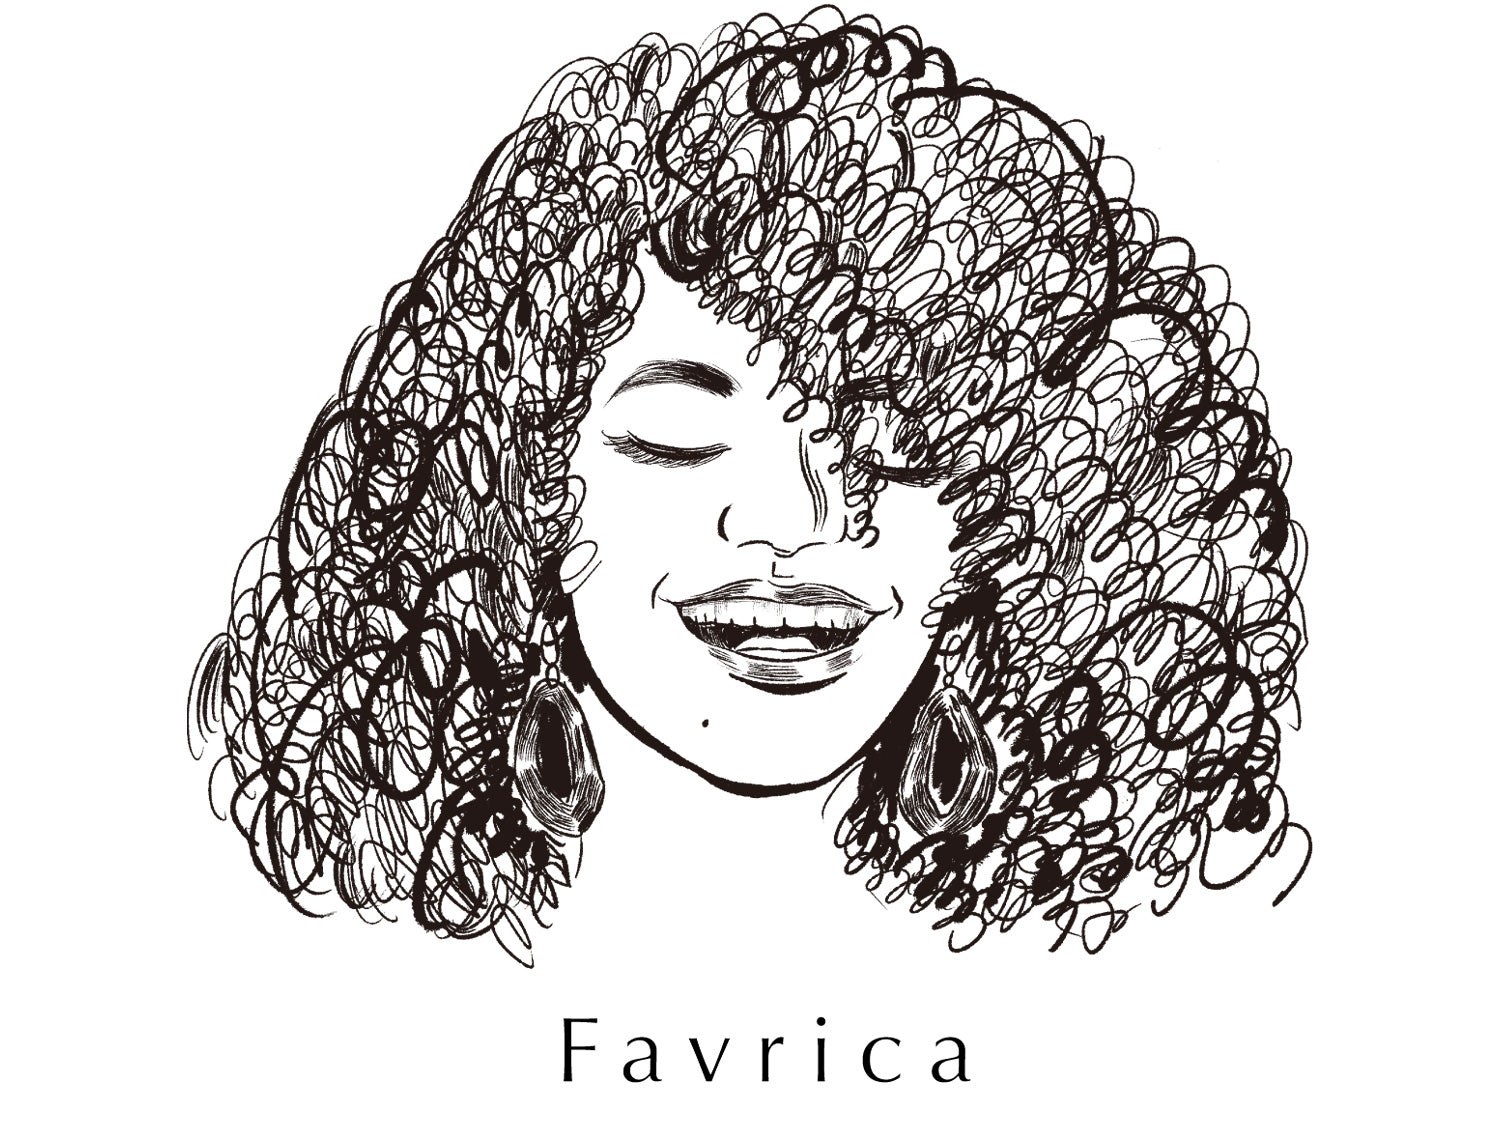 Favricaの顔ロゴ